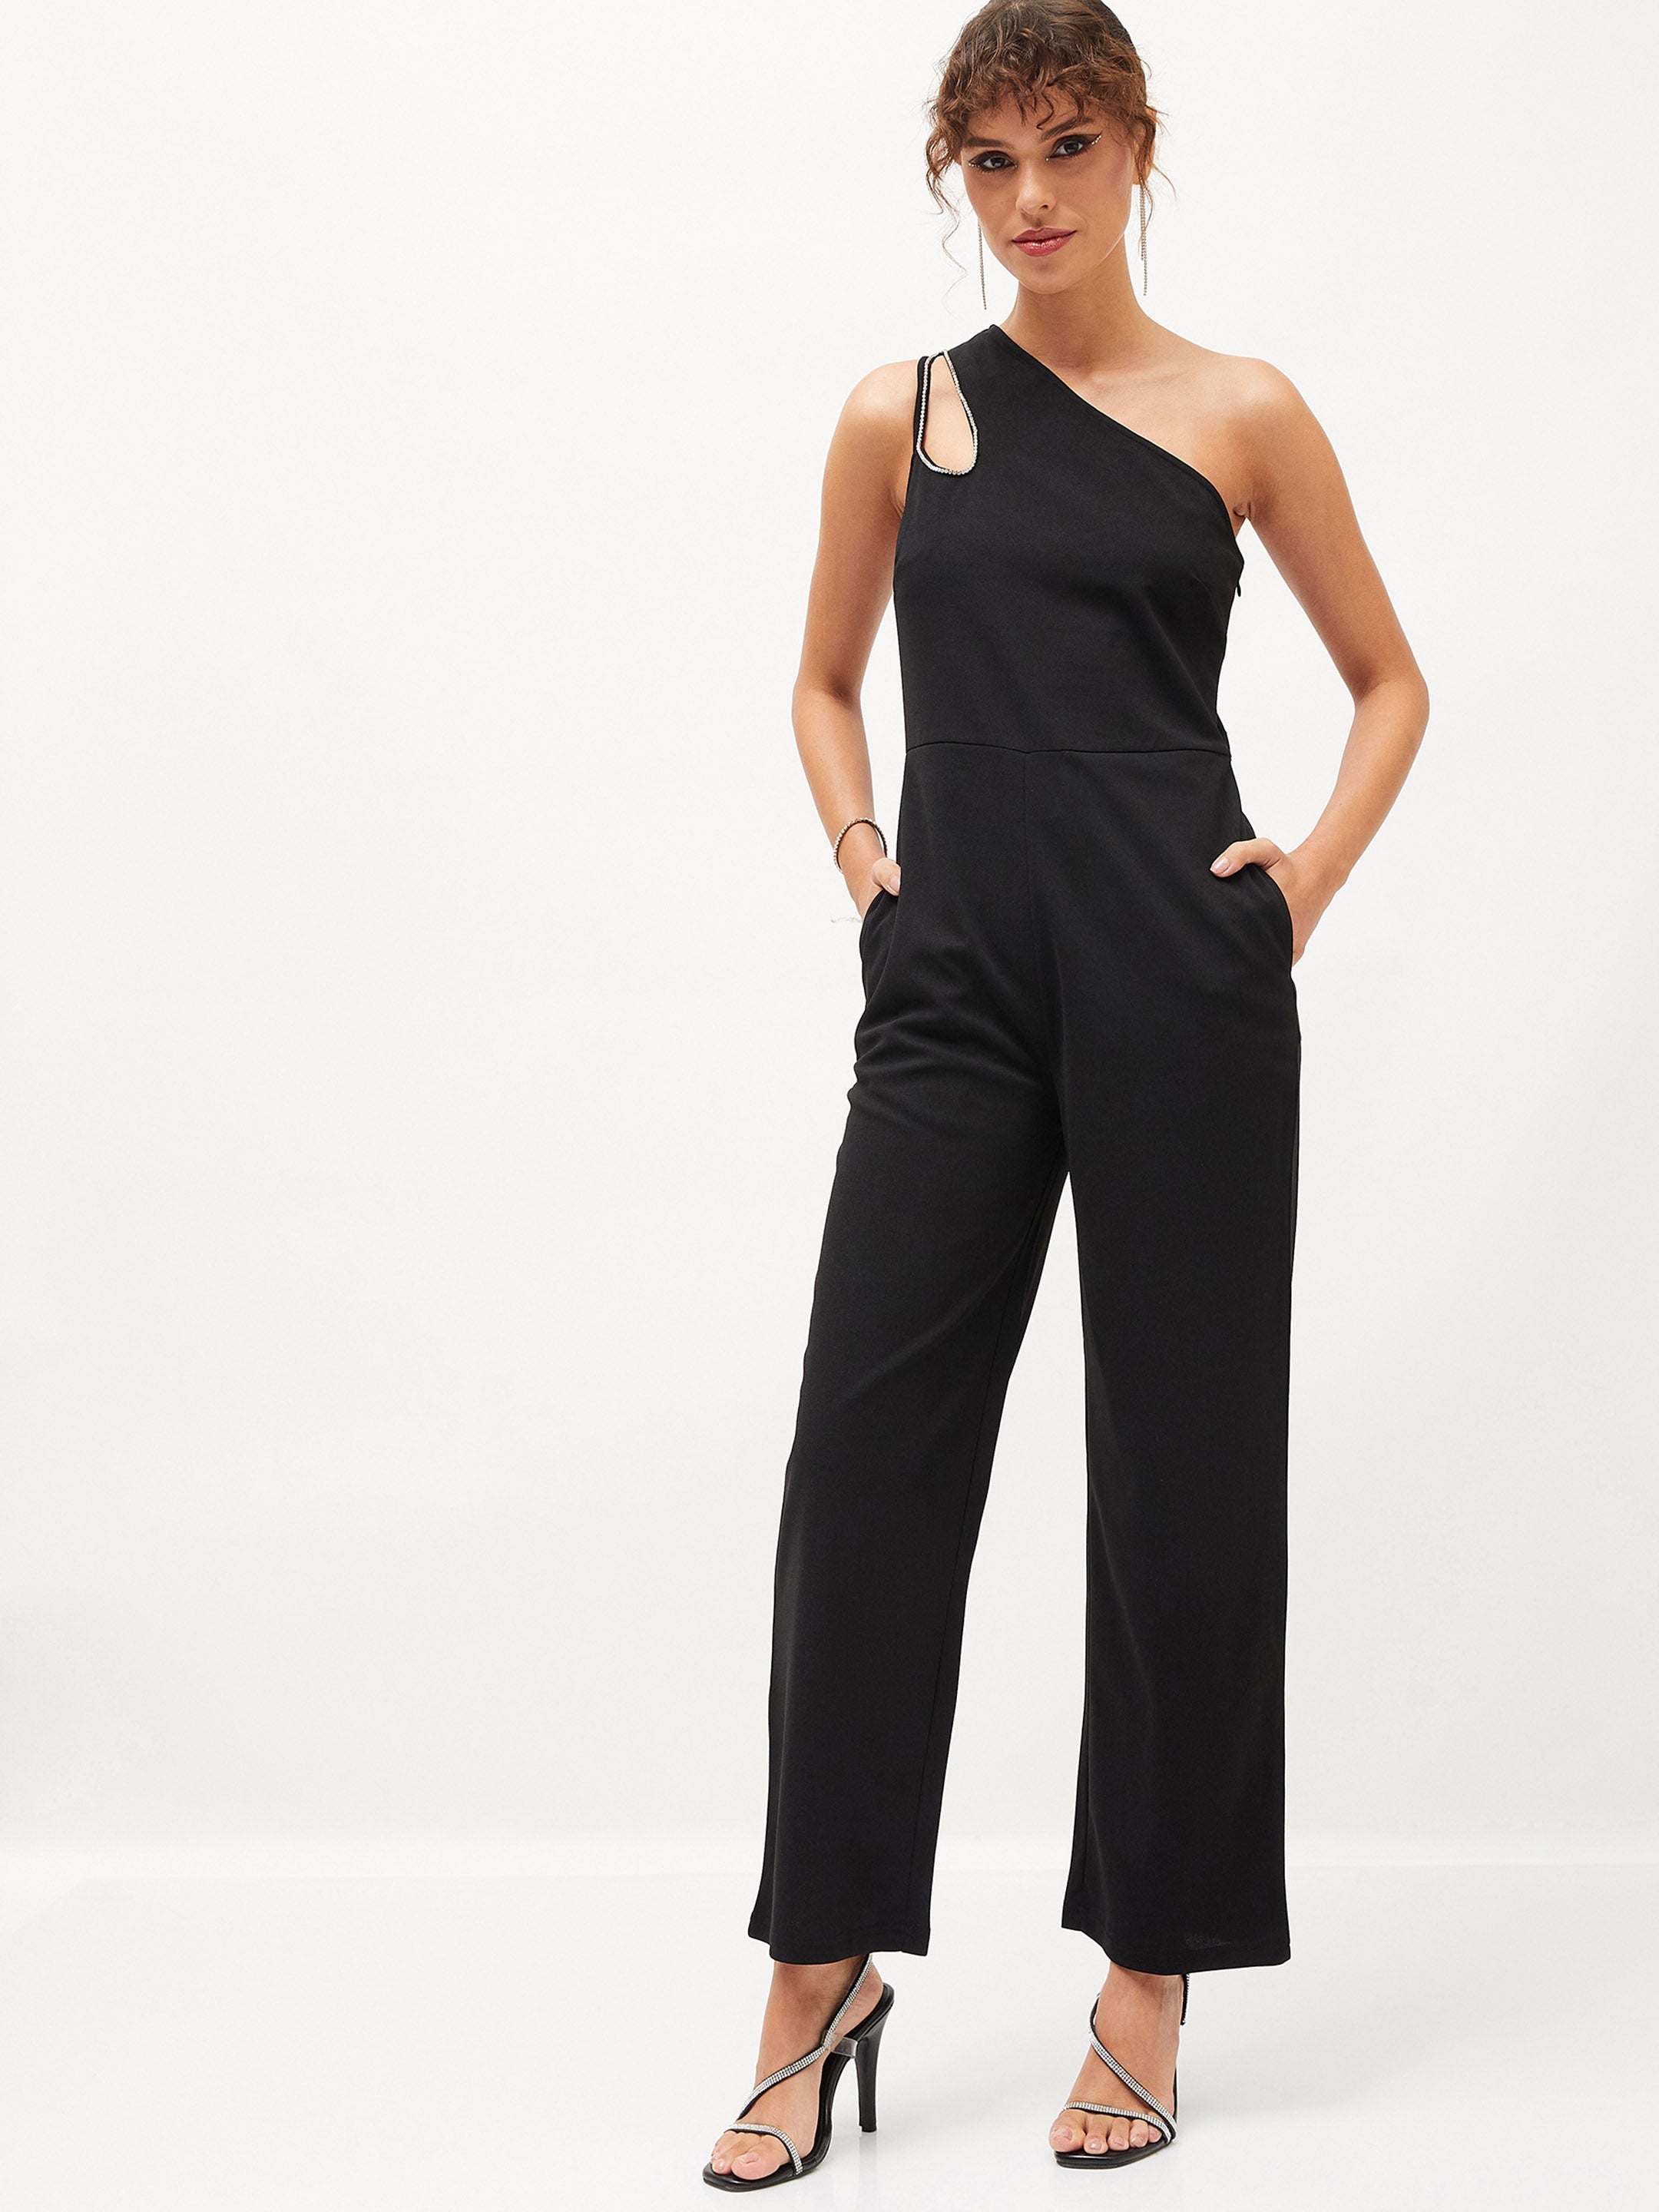 Women's Black Diamante One Shoulder Jumpsuit - Lyush